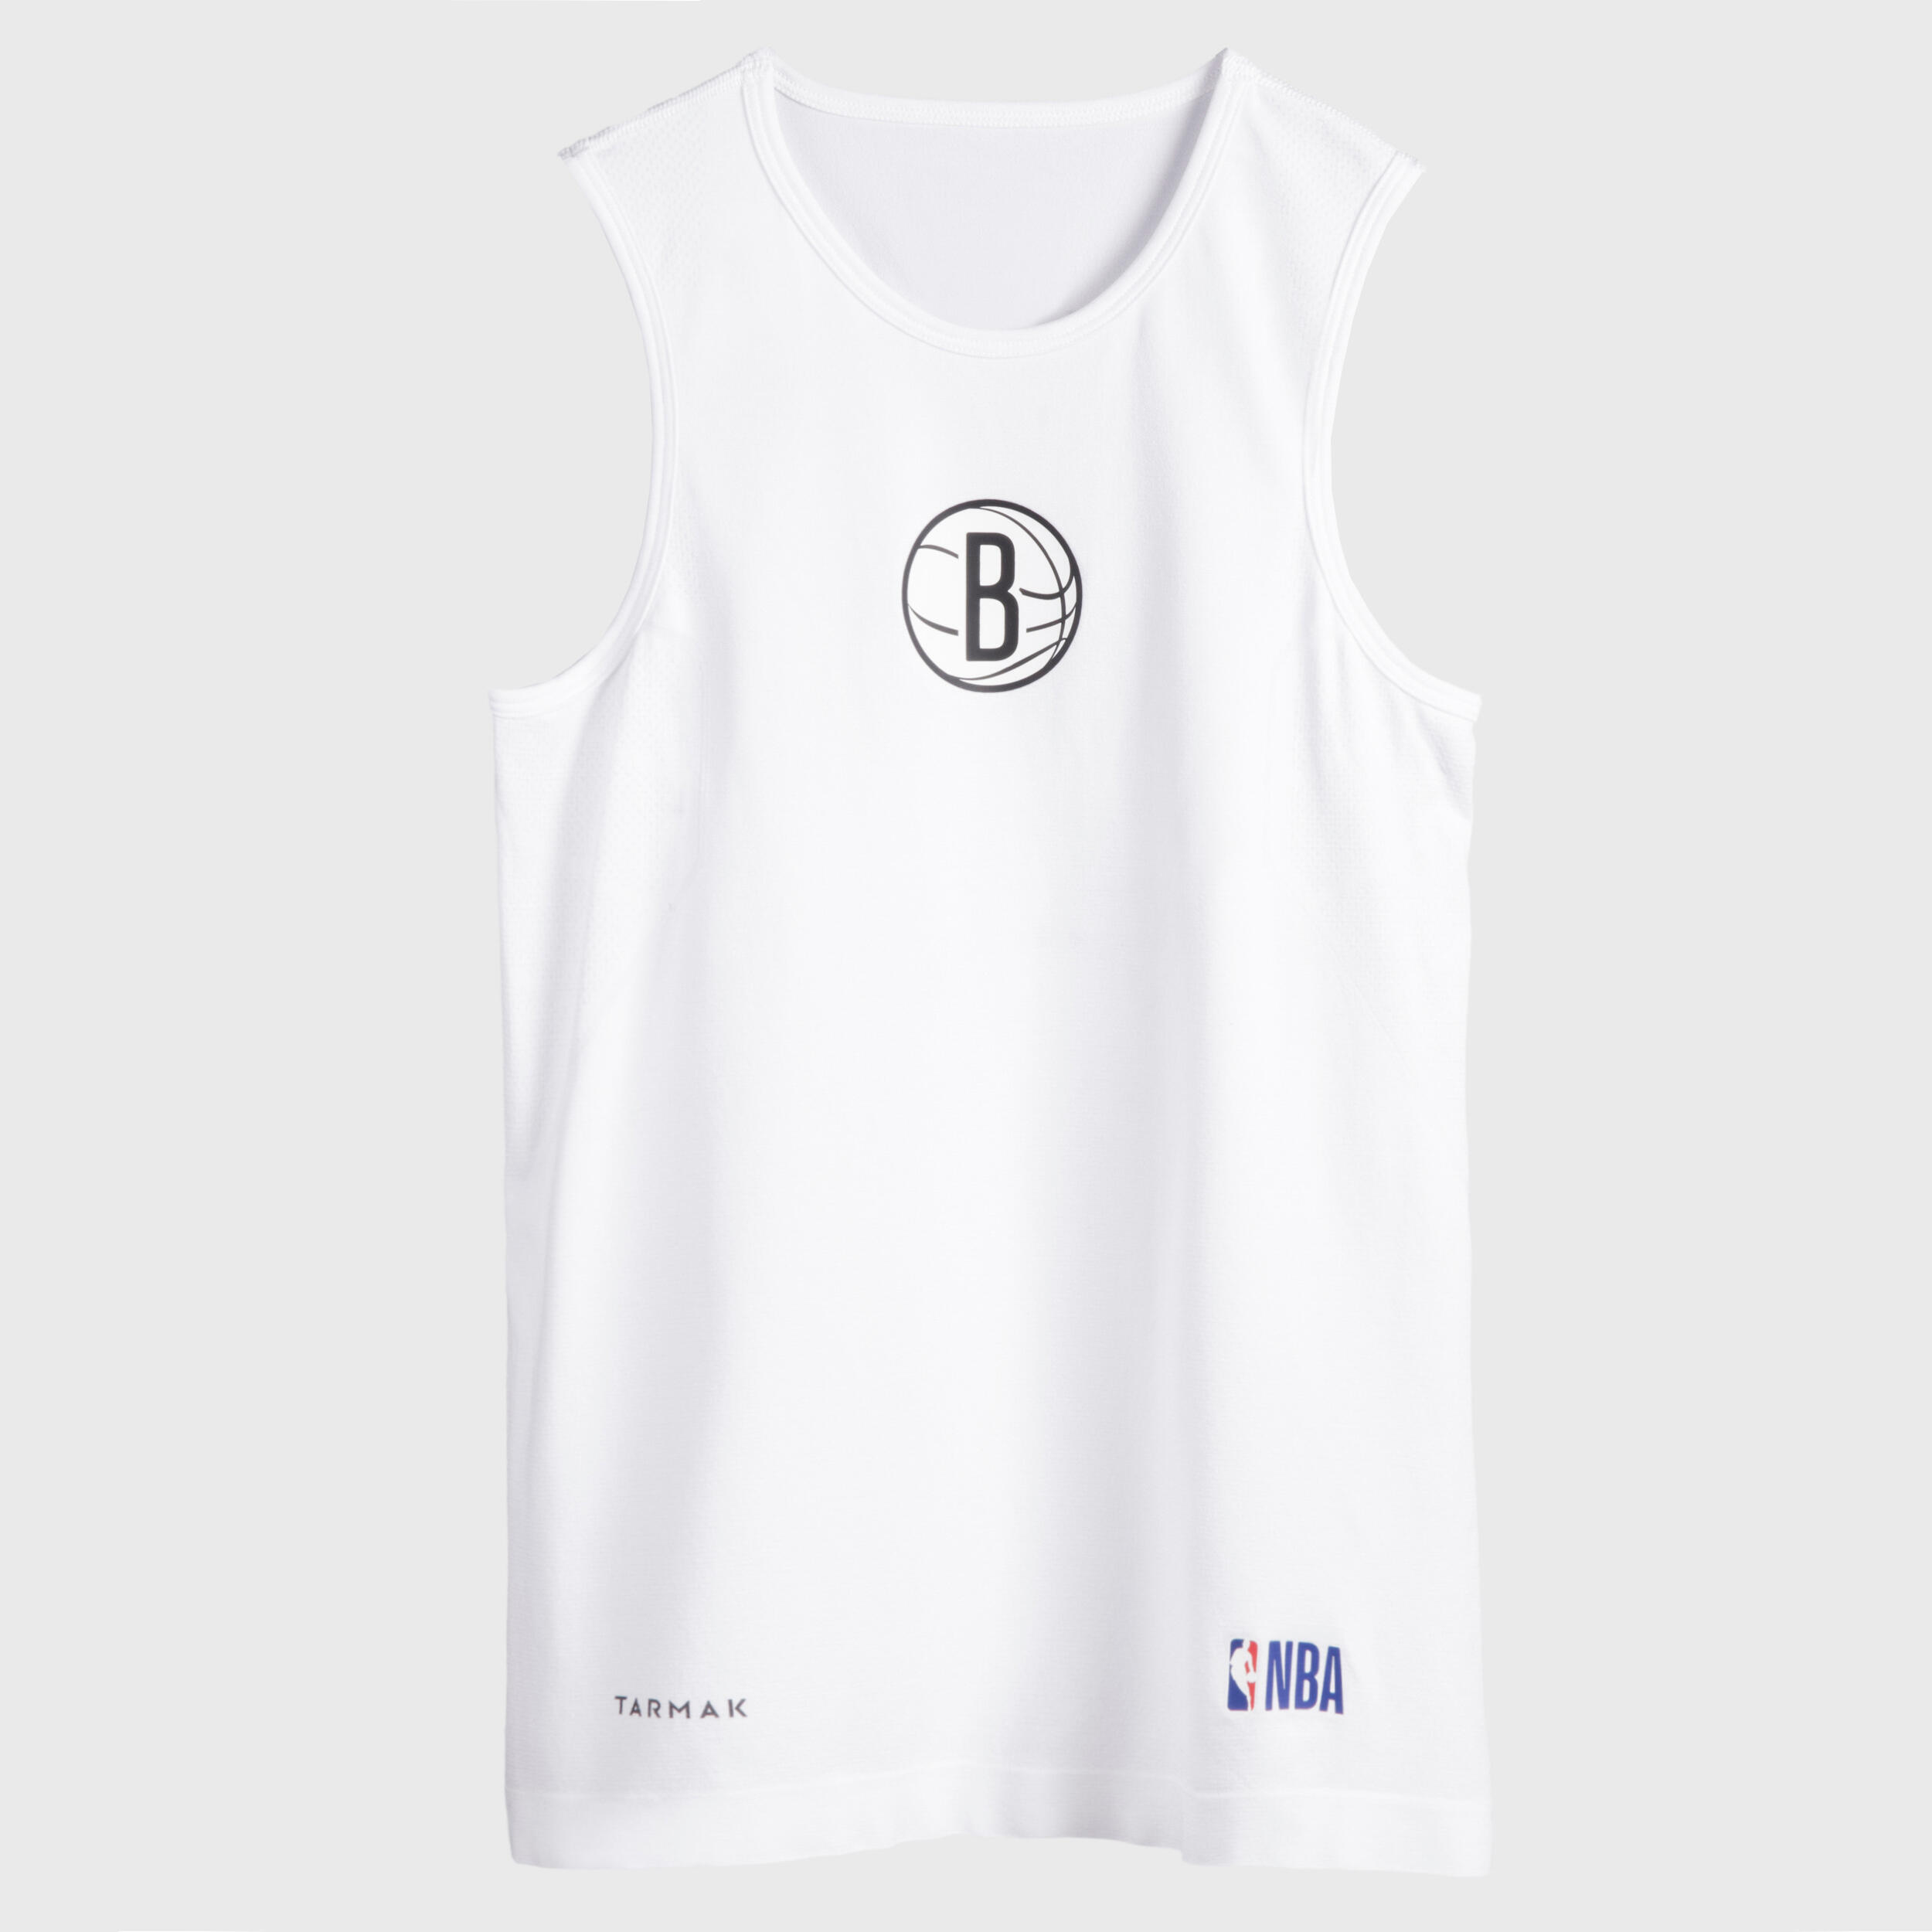 Kids' Slim Fit Basketball Base Layer Jersey UT500 - White/NBA Brooklyn Nets 2/9